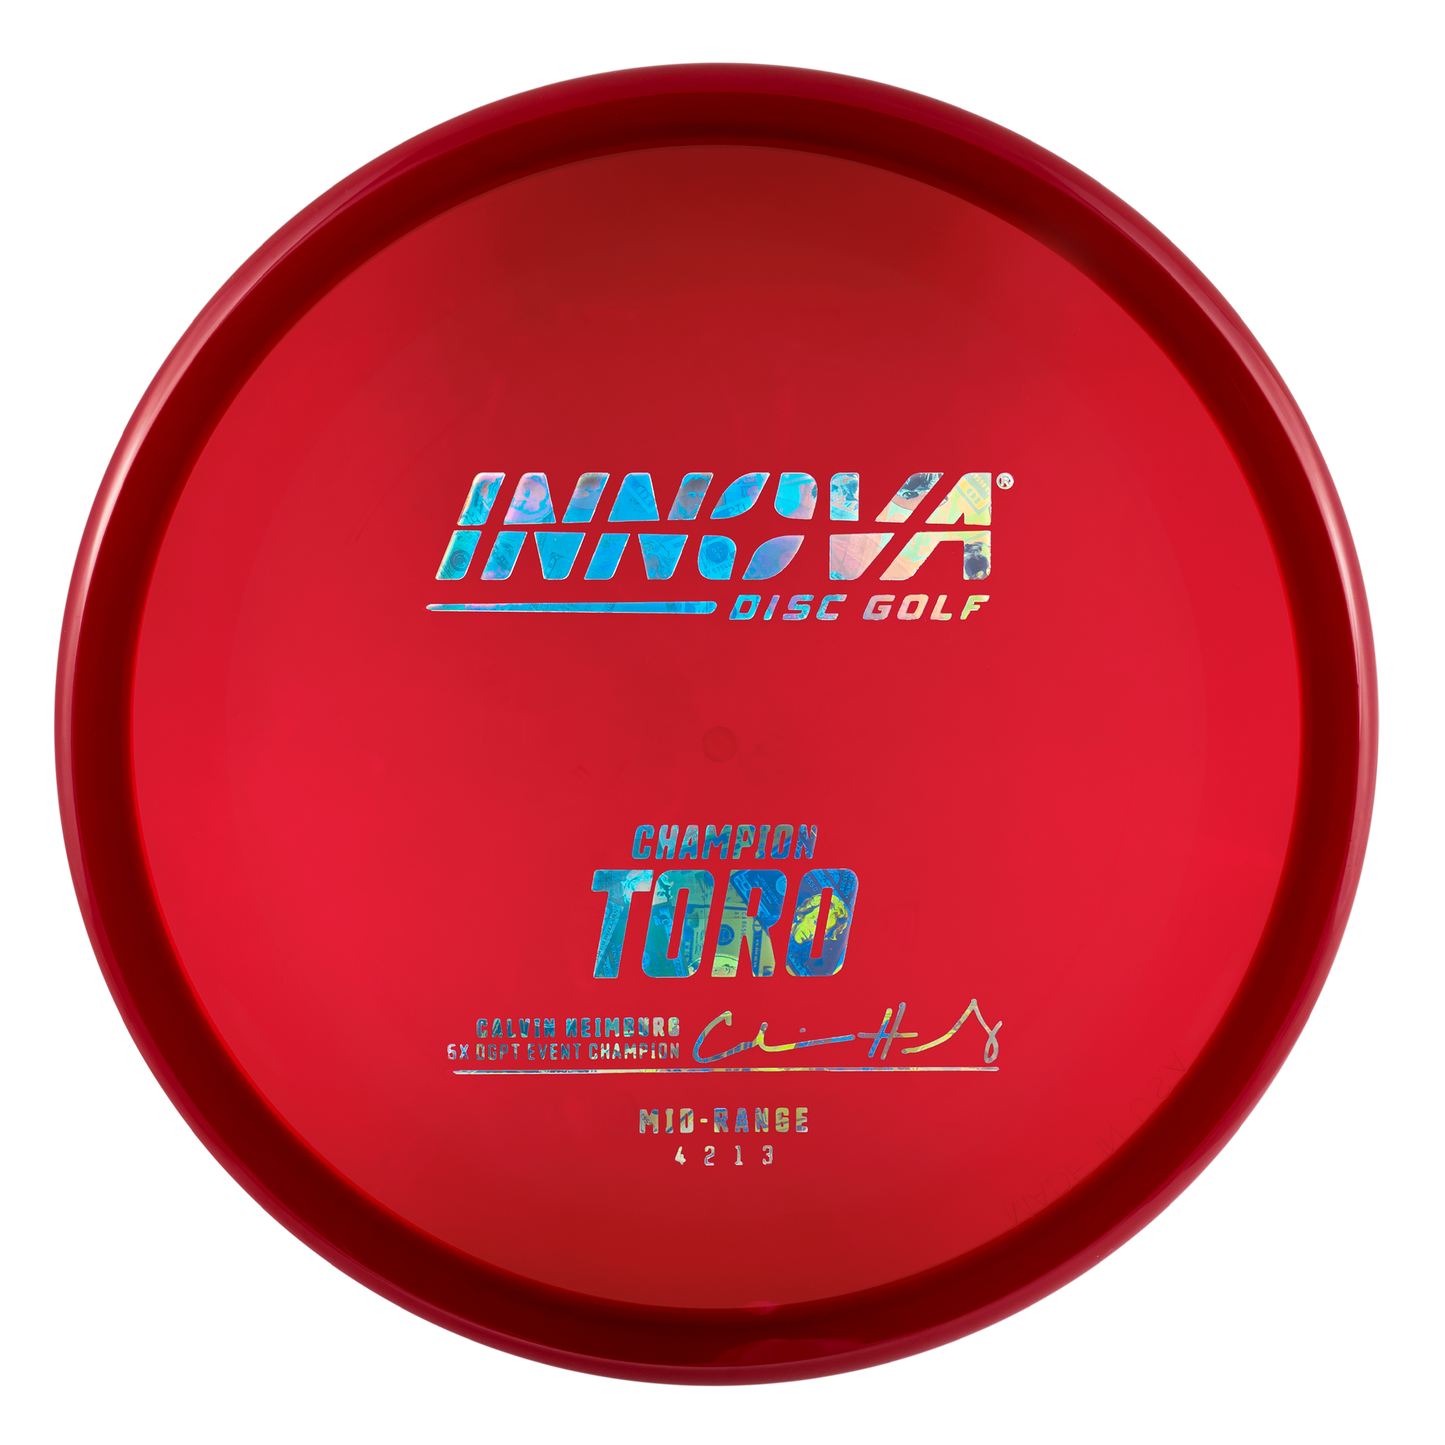 Innova Champion Toro Disc